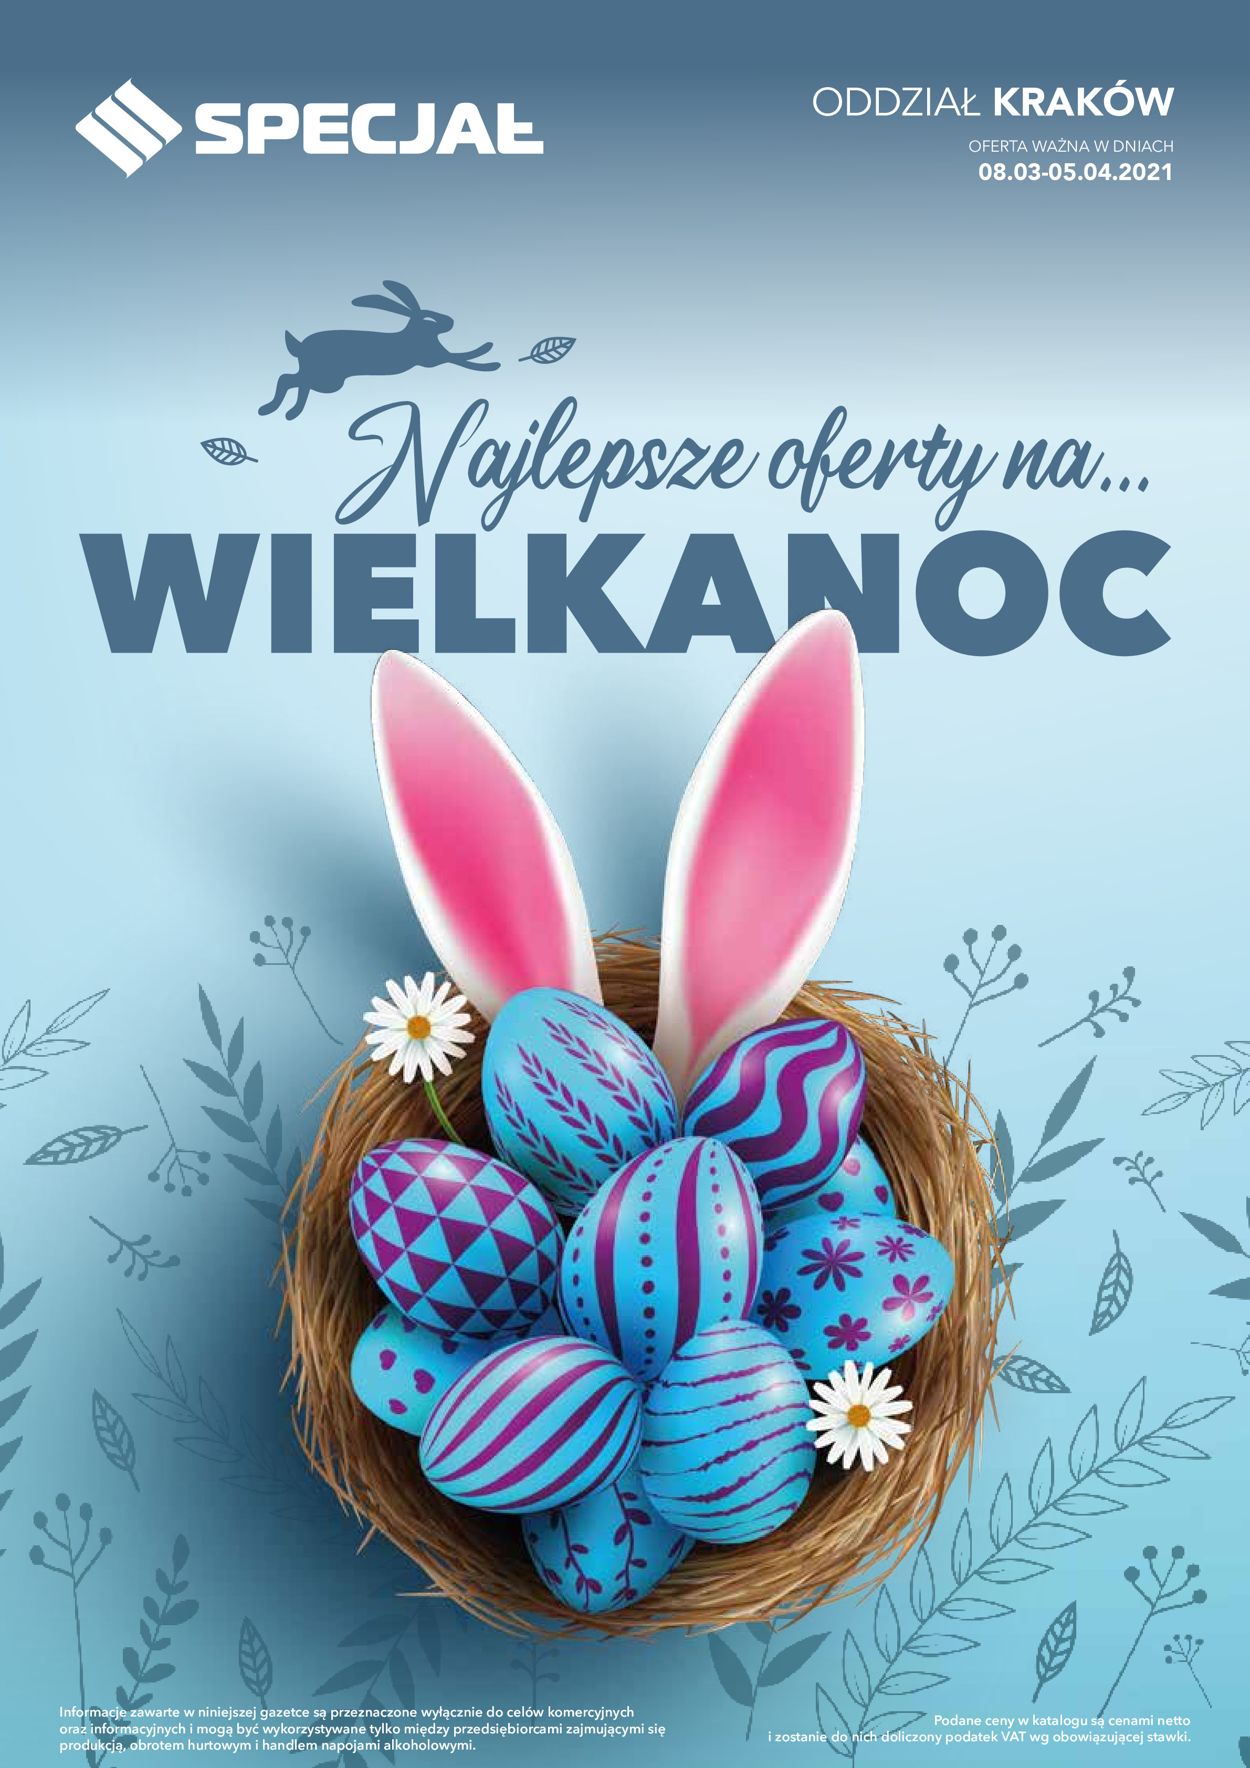 Gazetka promocyjna Specjał Wielkanoc 2021! - Oddział Kraków - 08.03-05.04.2021